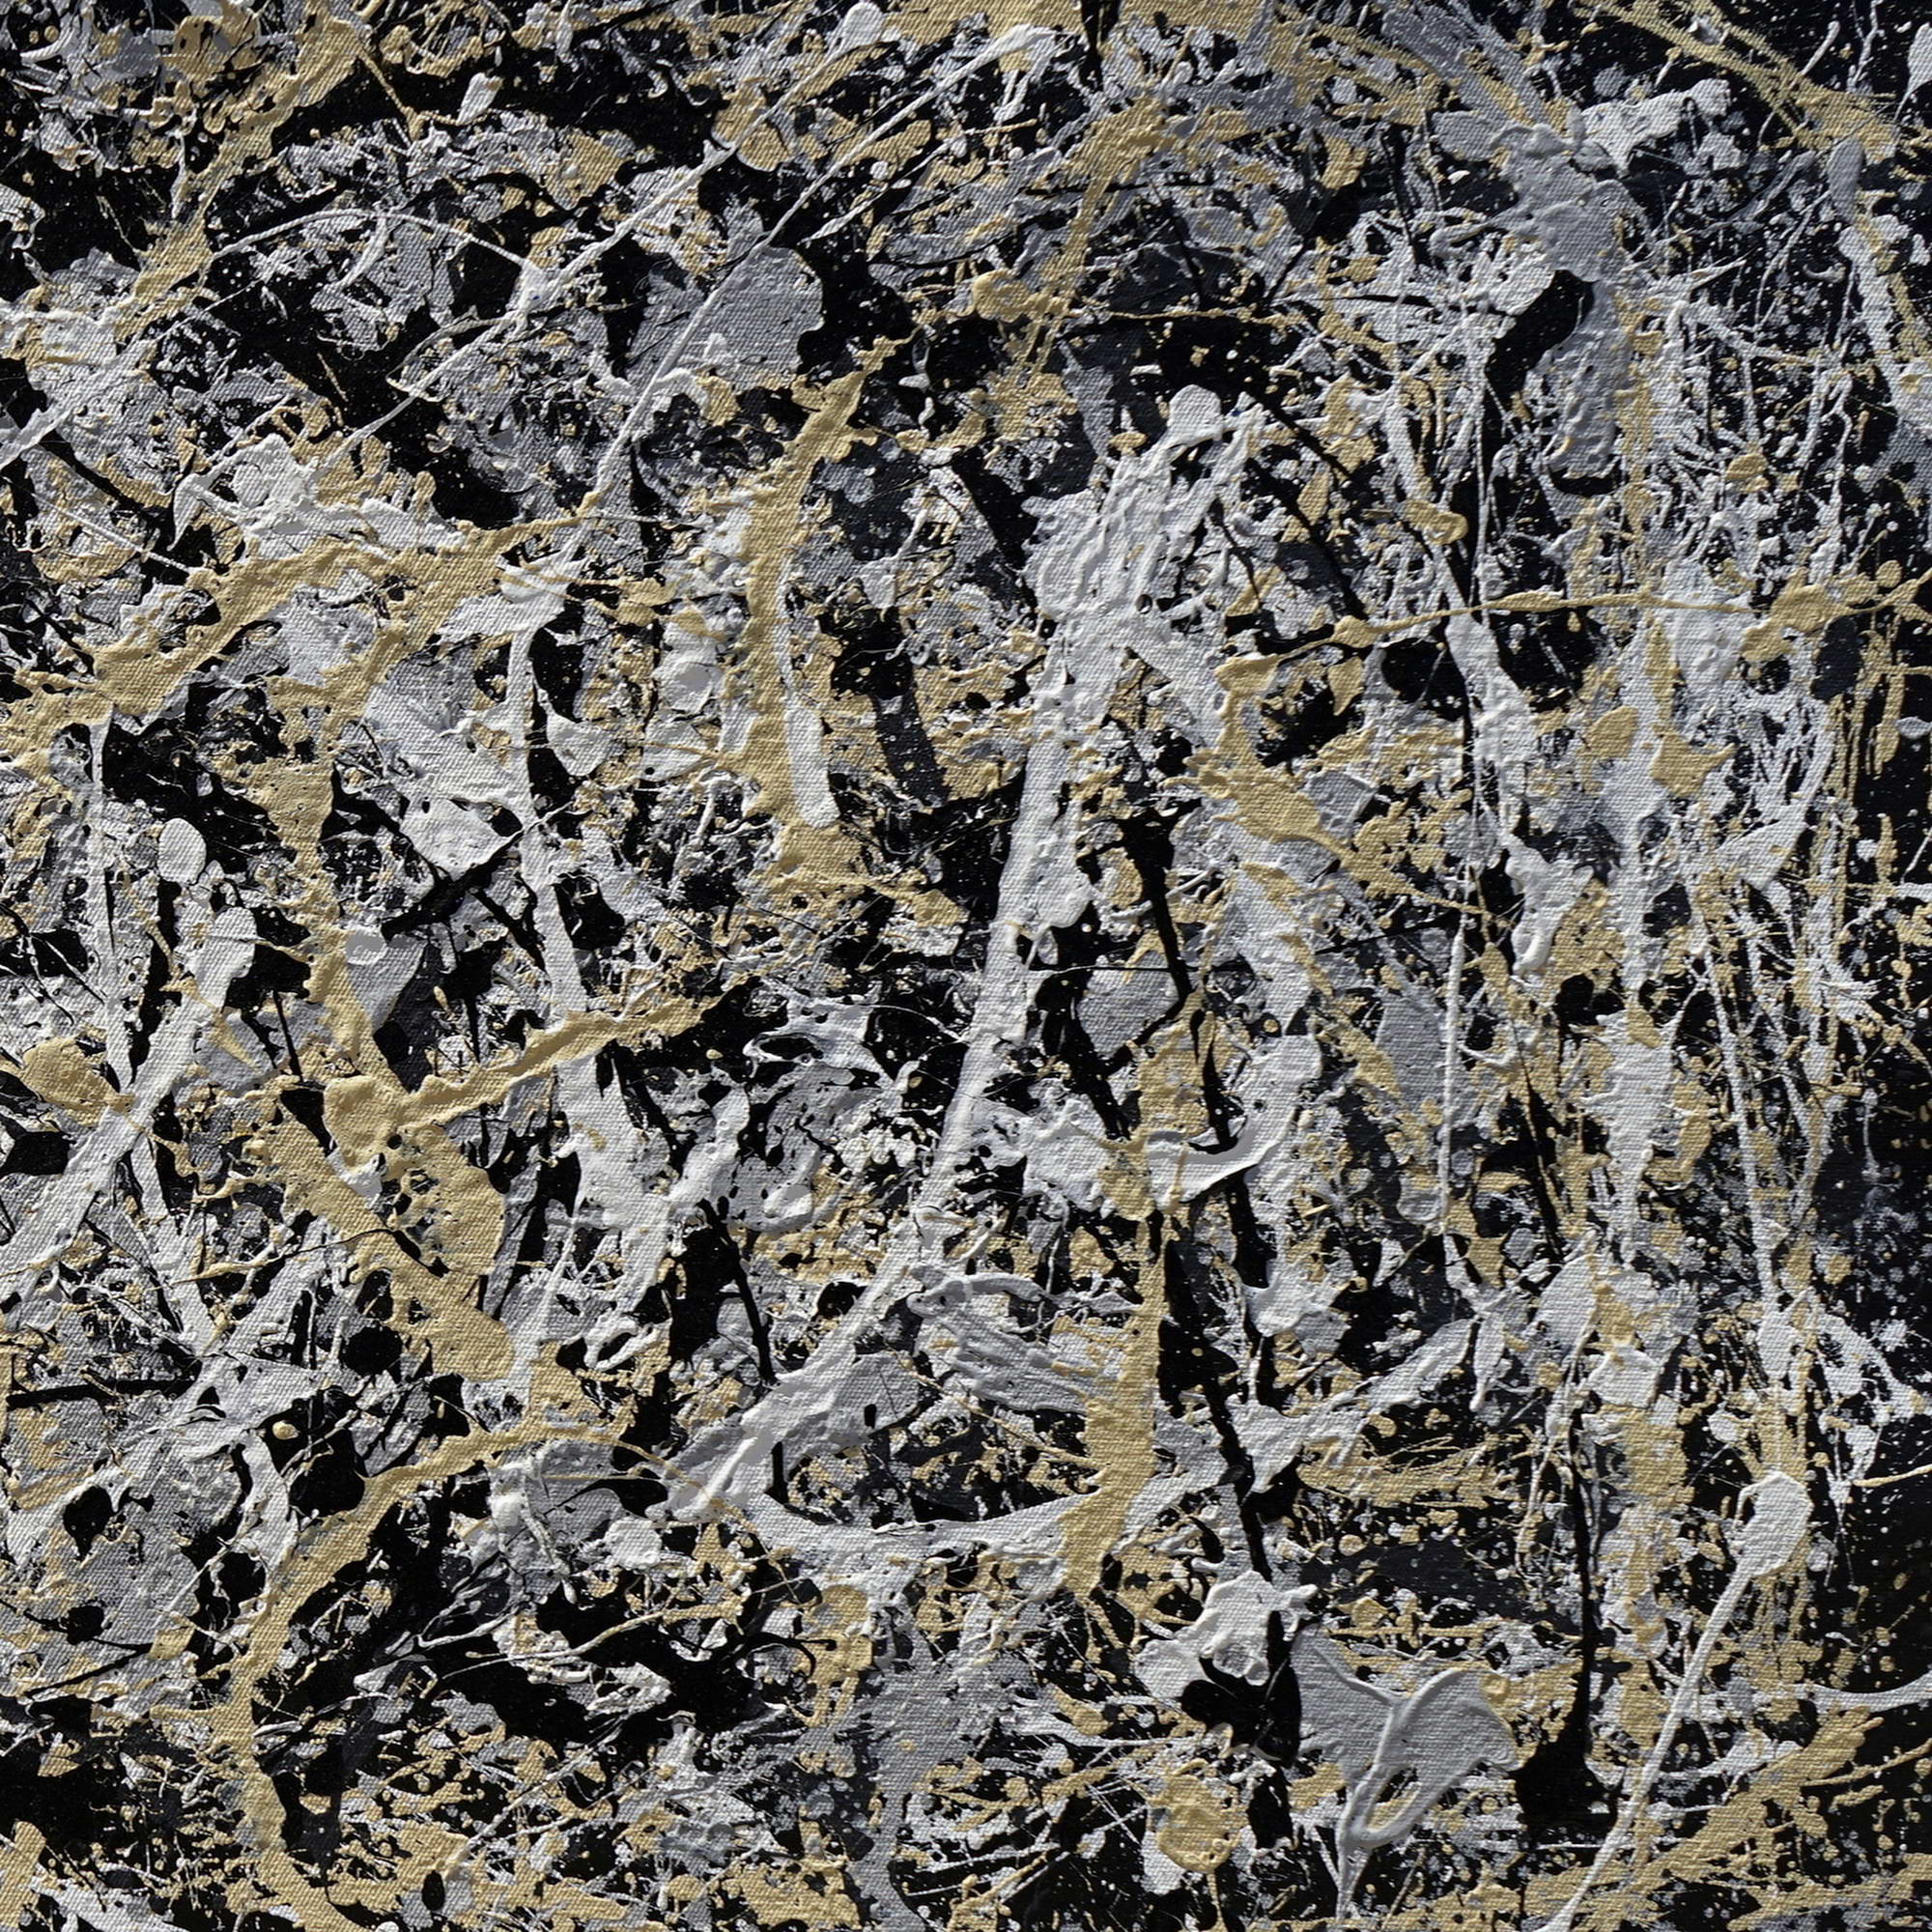 Dynamisme abstrait style Pollock peint à la main 75x150cm